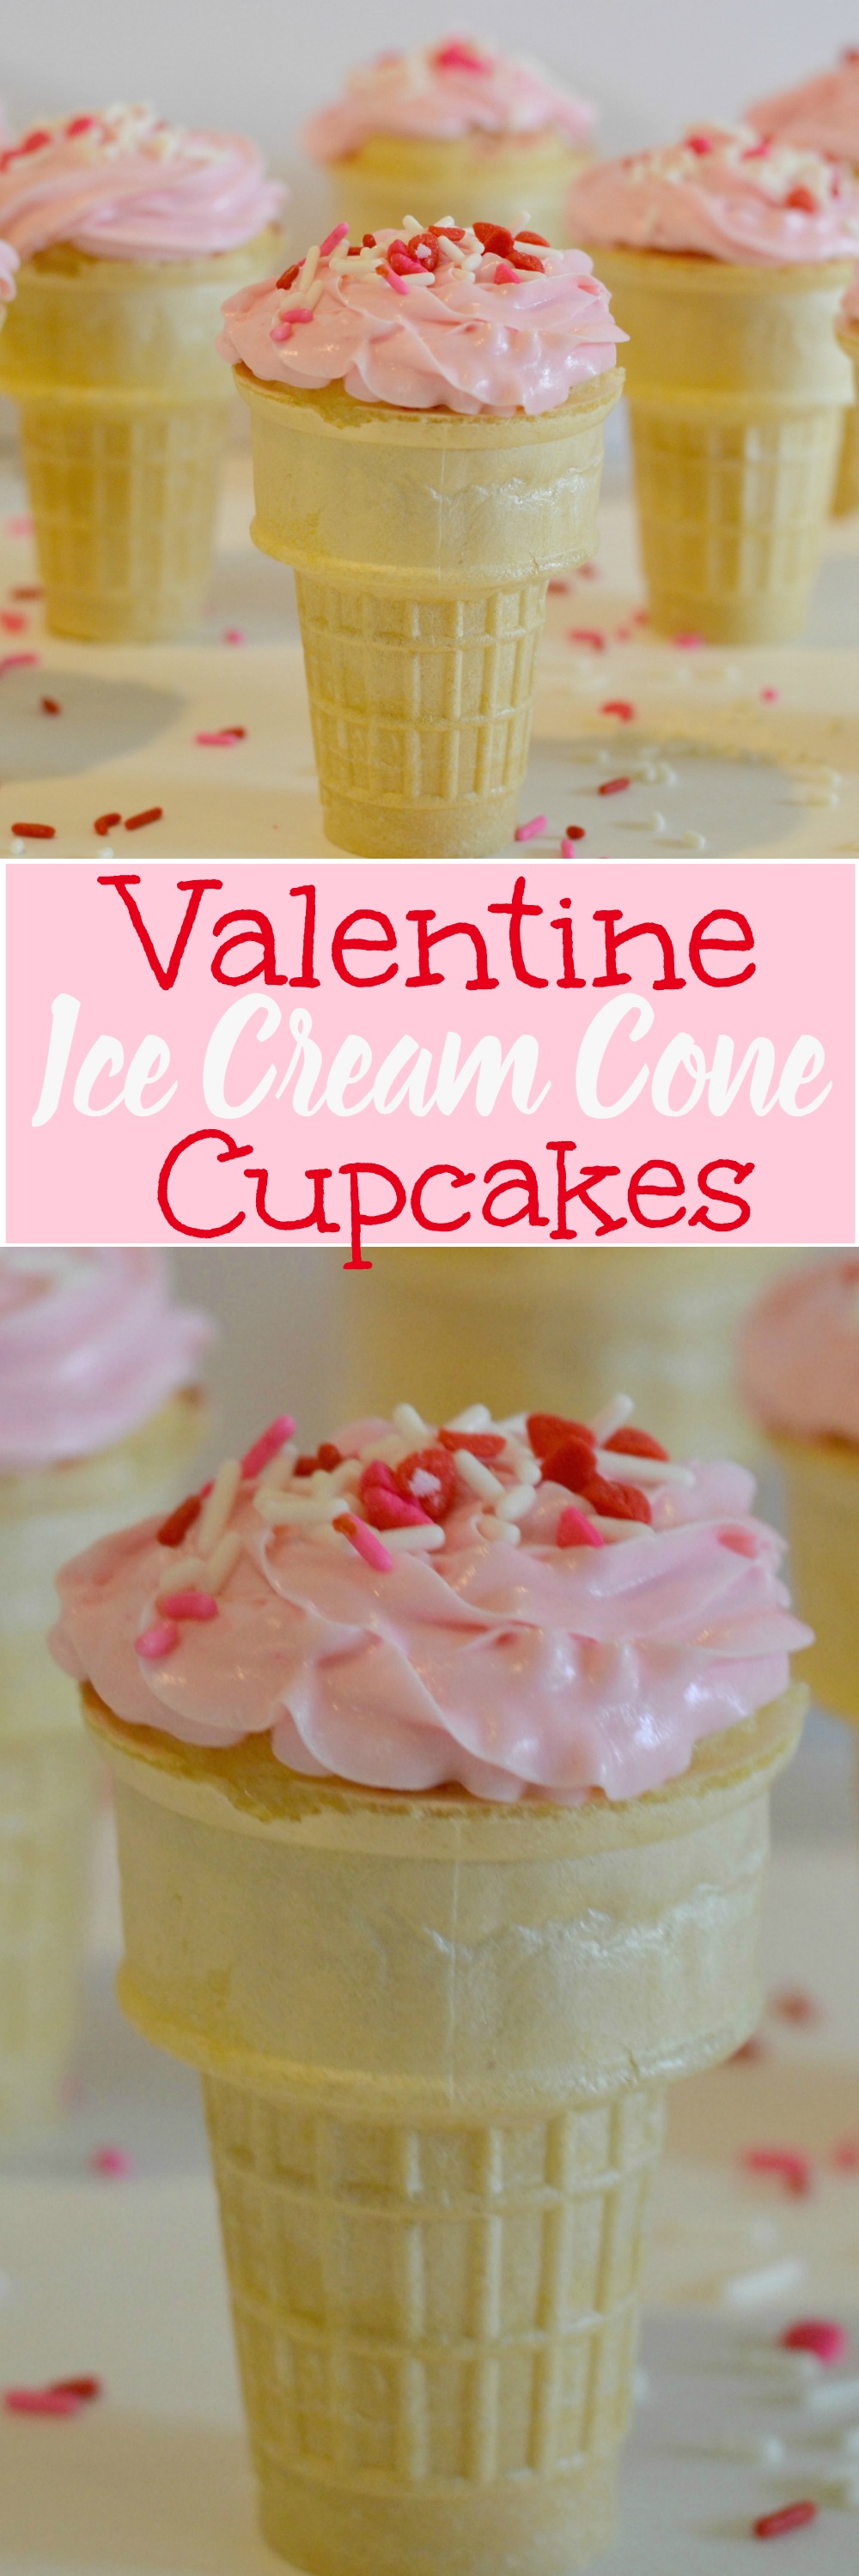 Valentine Ice Cream Cone Cupcakes